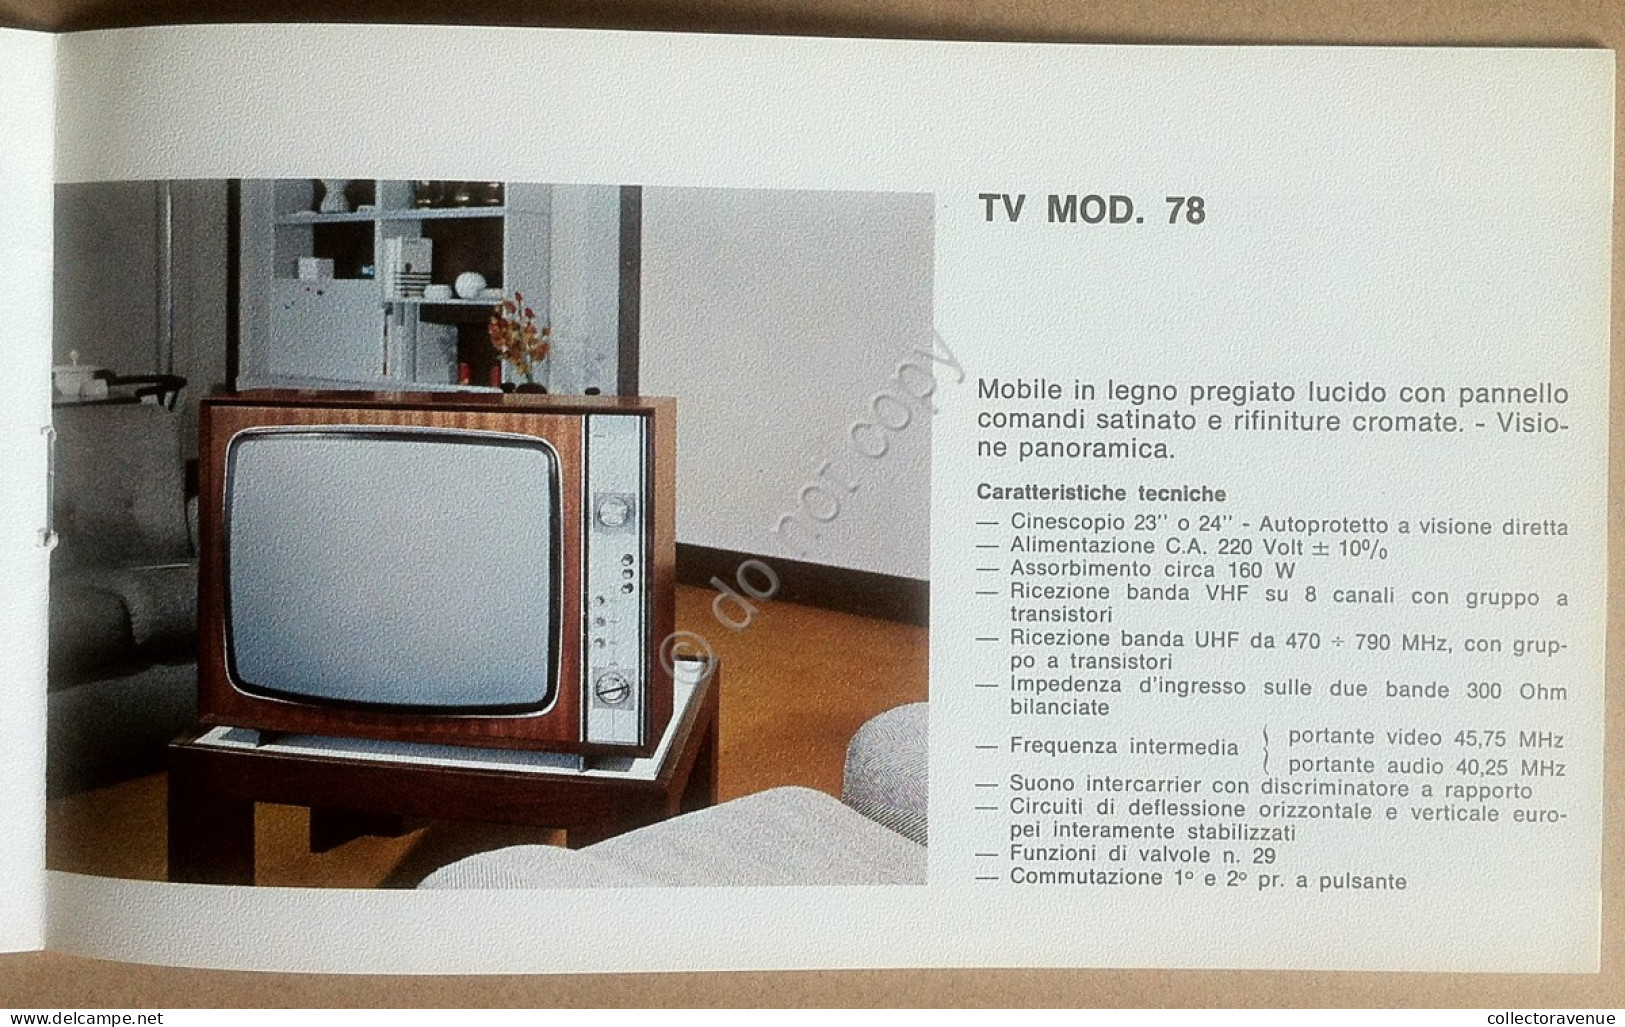 Effe Pi - Libretto - Catalogo Televisori Anni '70 - Radio Televisione Vintage - Televisione